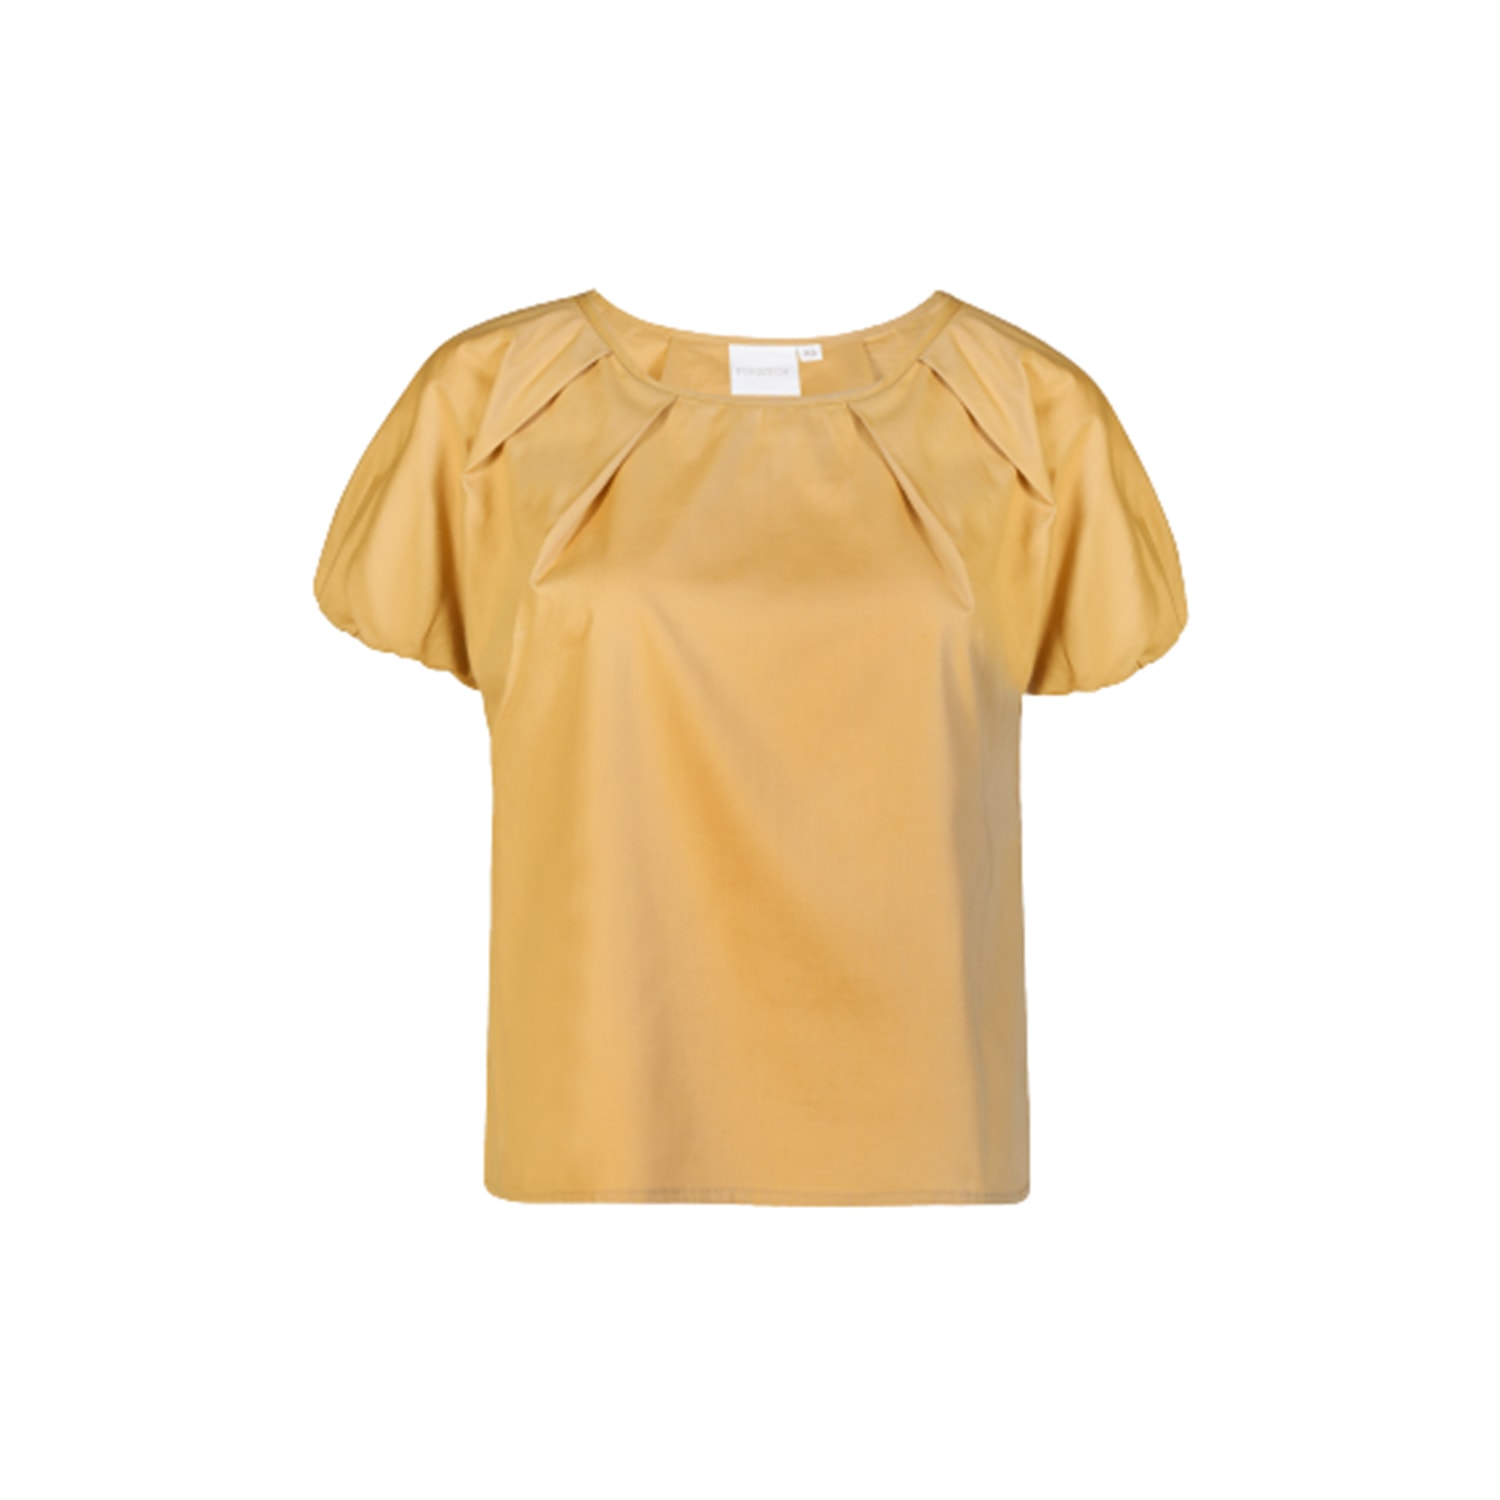 Women’s White / Yellow / Orange Balloon Sleeve Tuscan Sun Top Medium Reistor